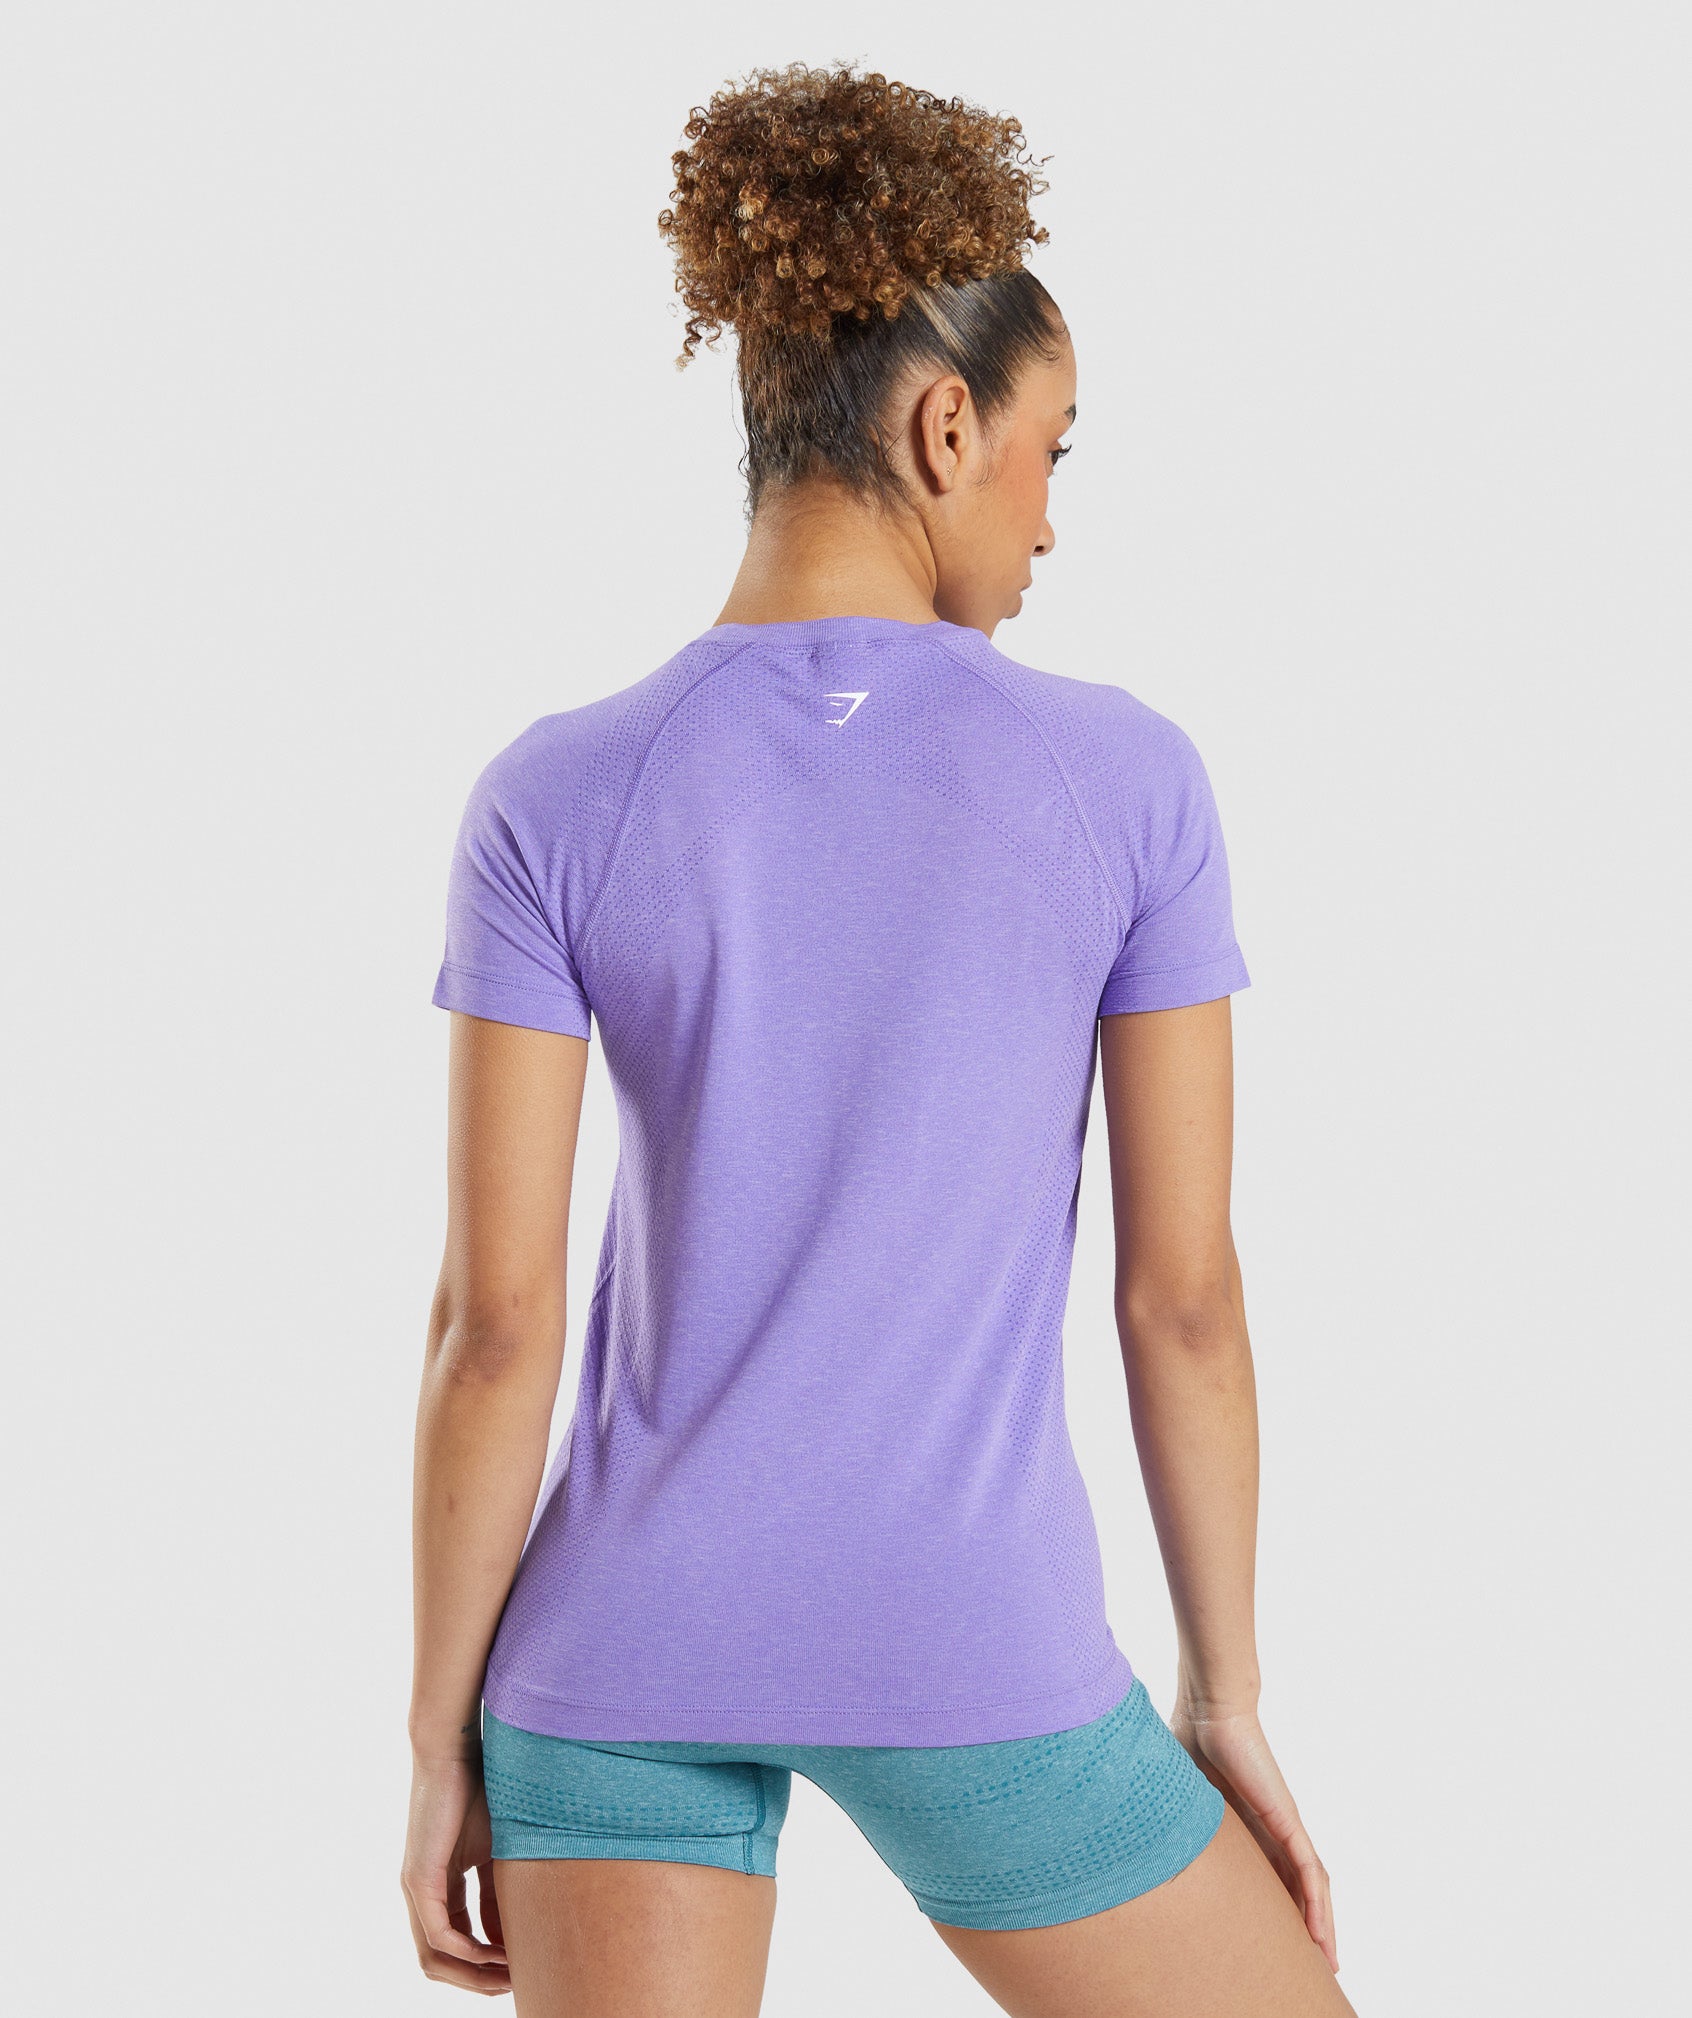 Vital Seamless 2.0 Light T-Shirt in Bright Purple Marl - view 2